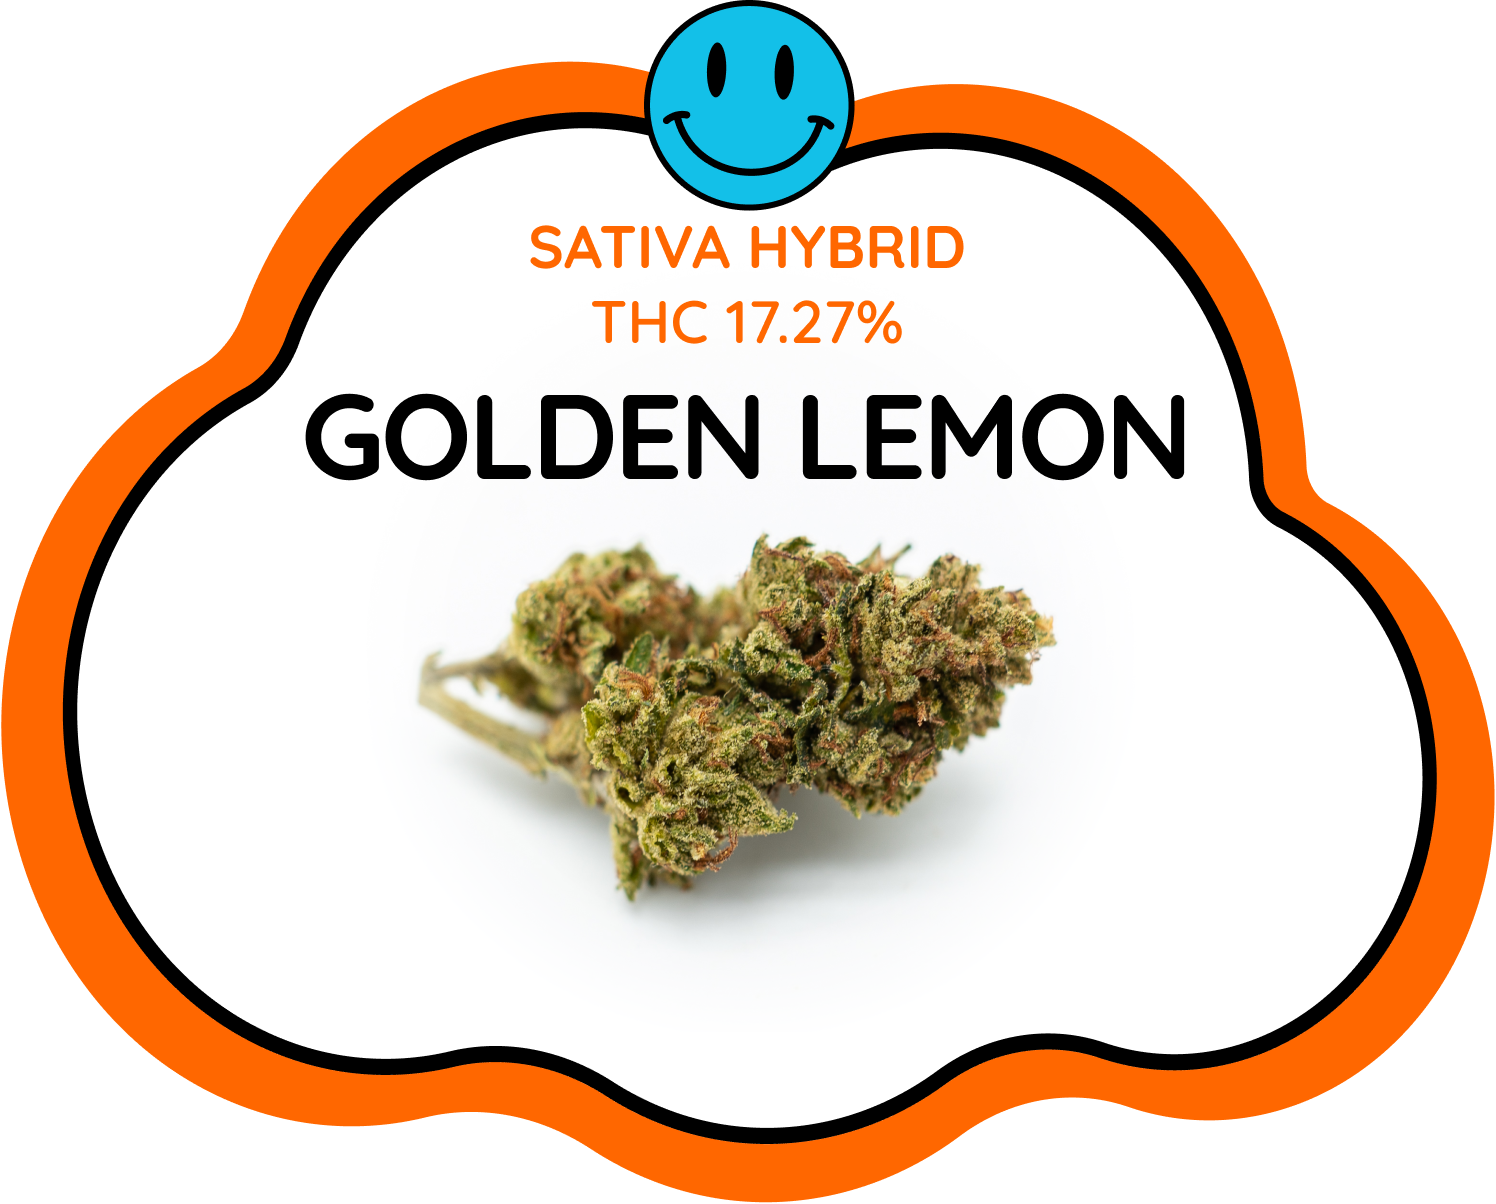 Golden Lemon strain